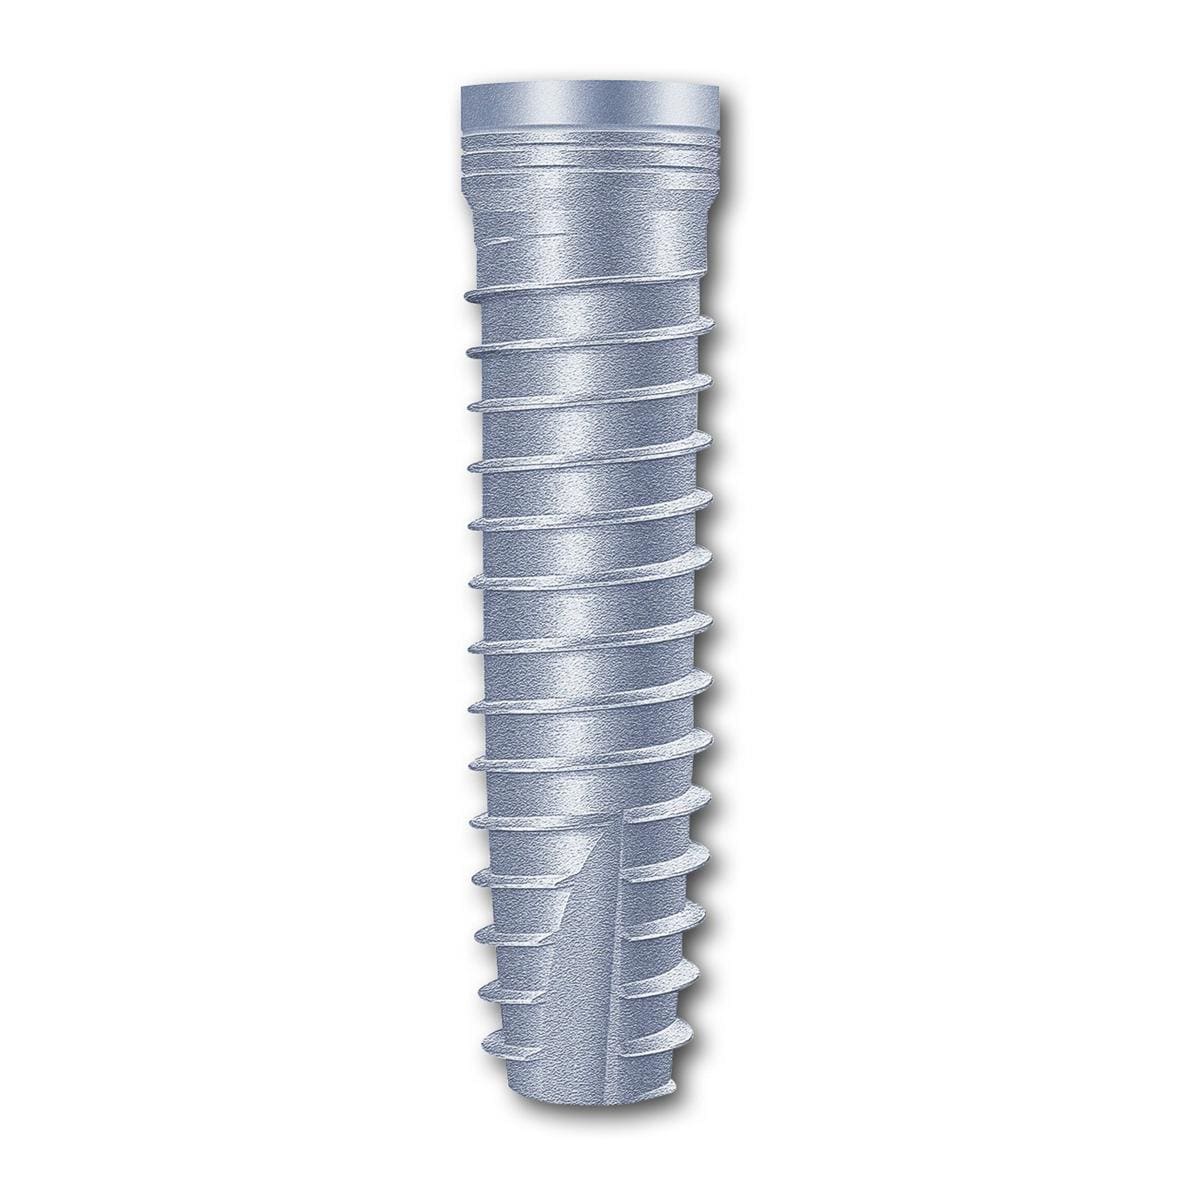 TL Implantat BONITex® Ø 3,8 mm - Länge 16 mm